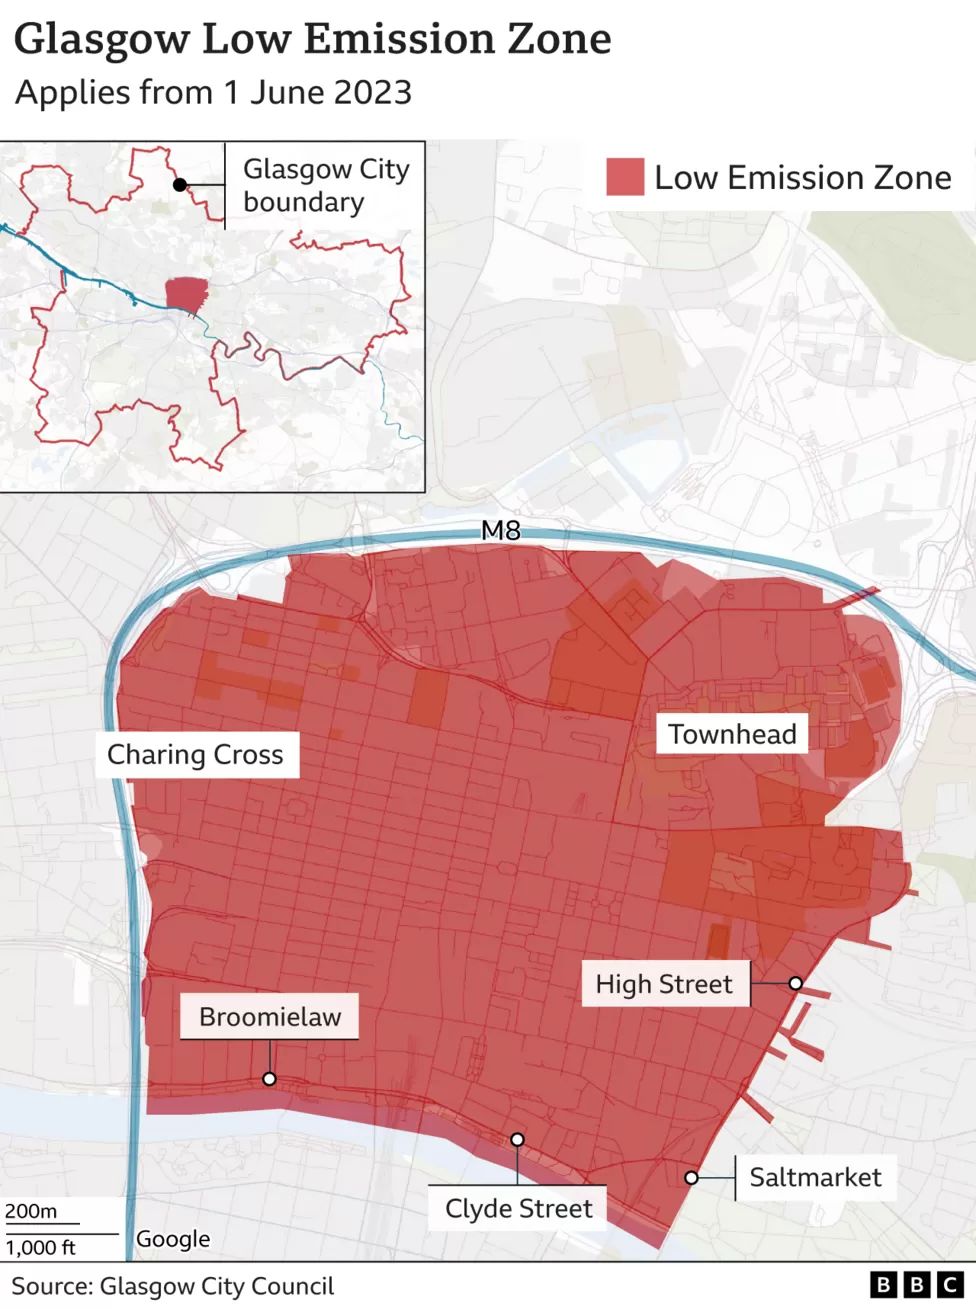 Glasgow's Low Emission Zone boundary map